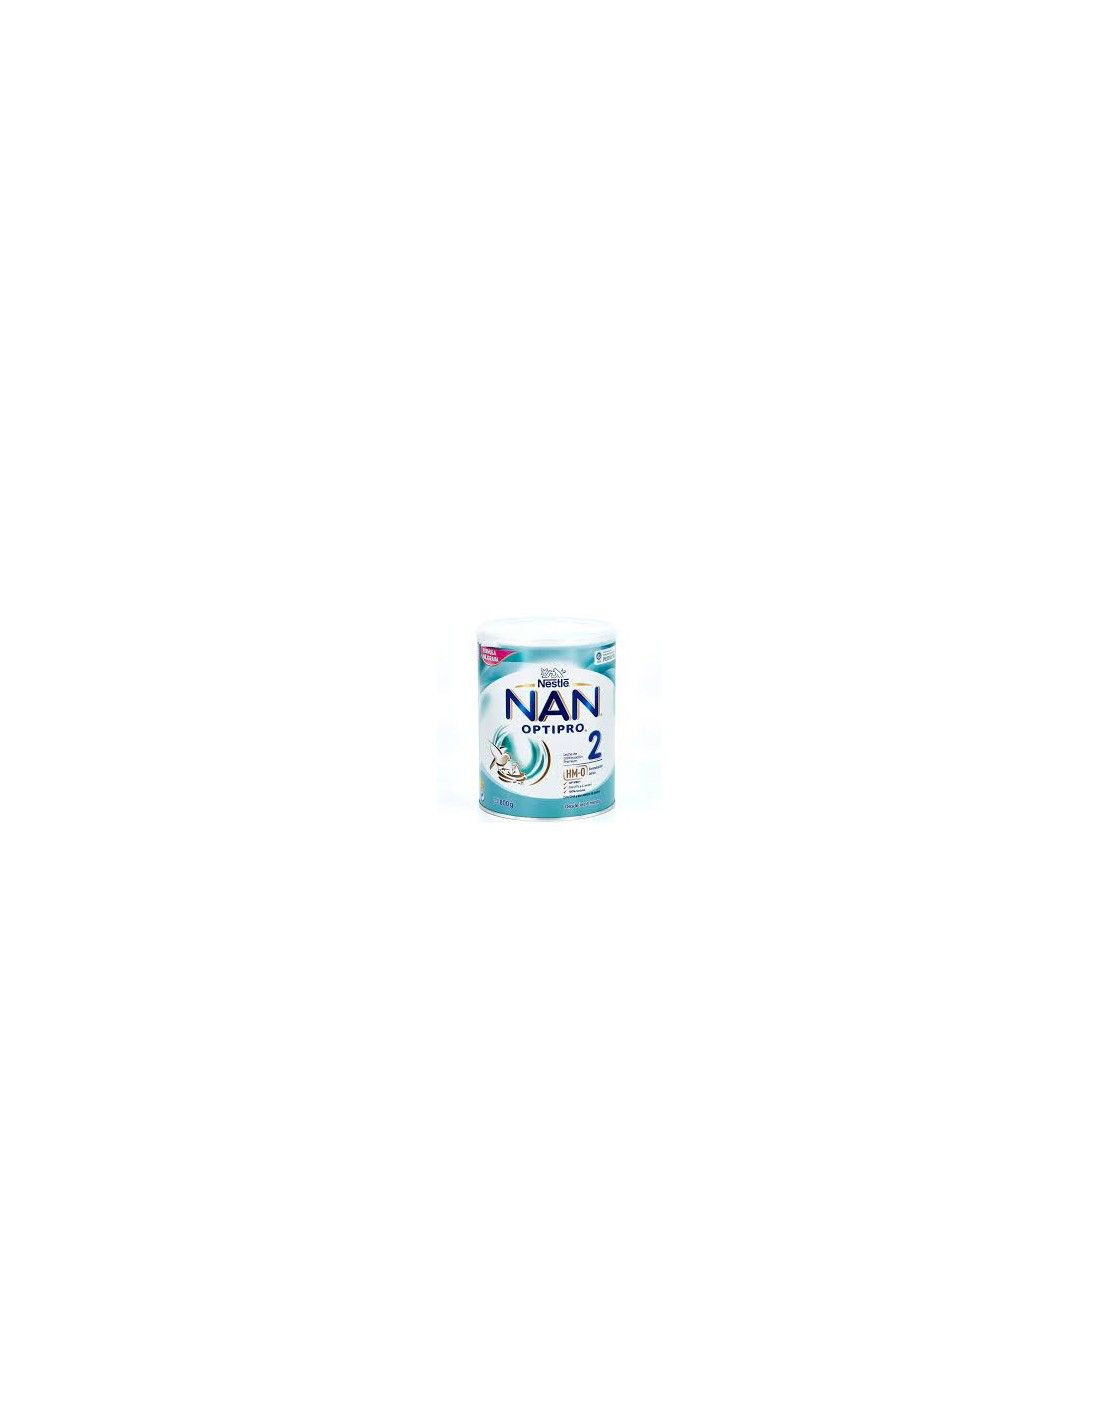 Nestle Nan 2 Optipro 800 GR 